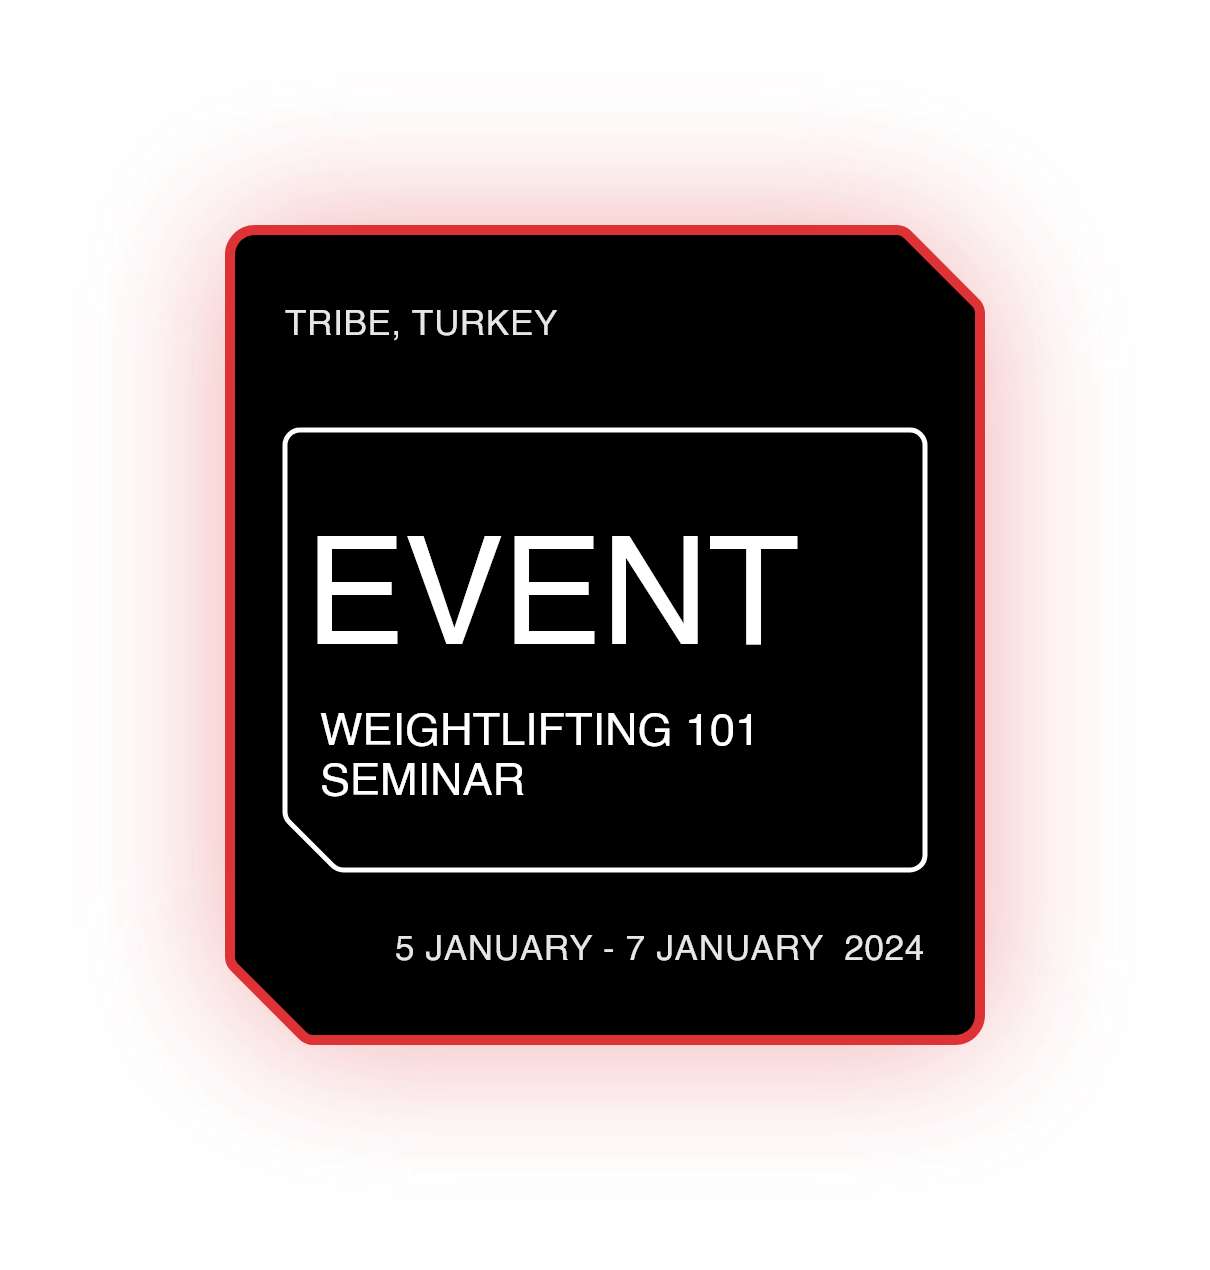 Weightlifting 101 Seminar - Istanbul, Turkey